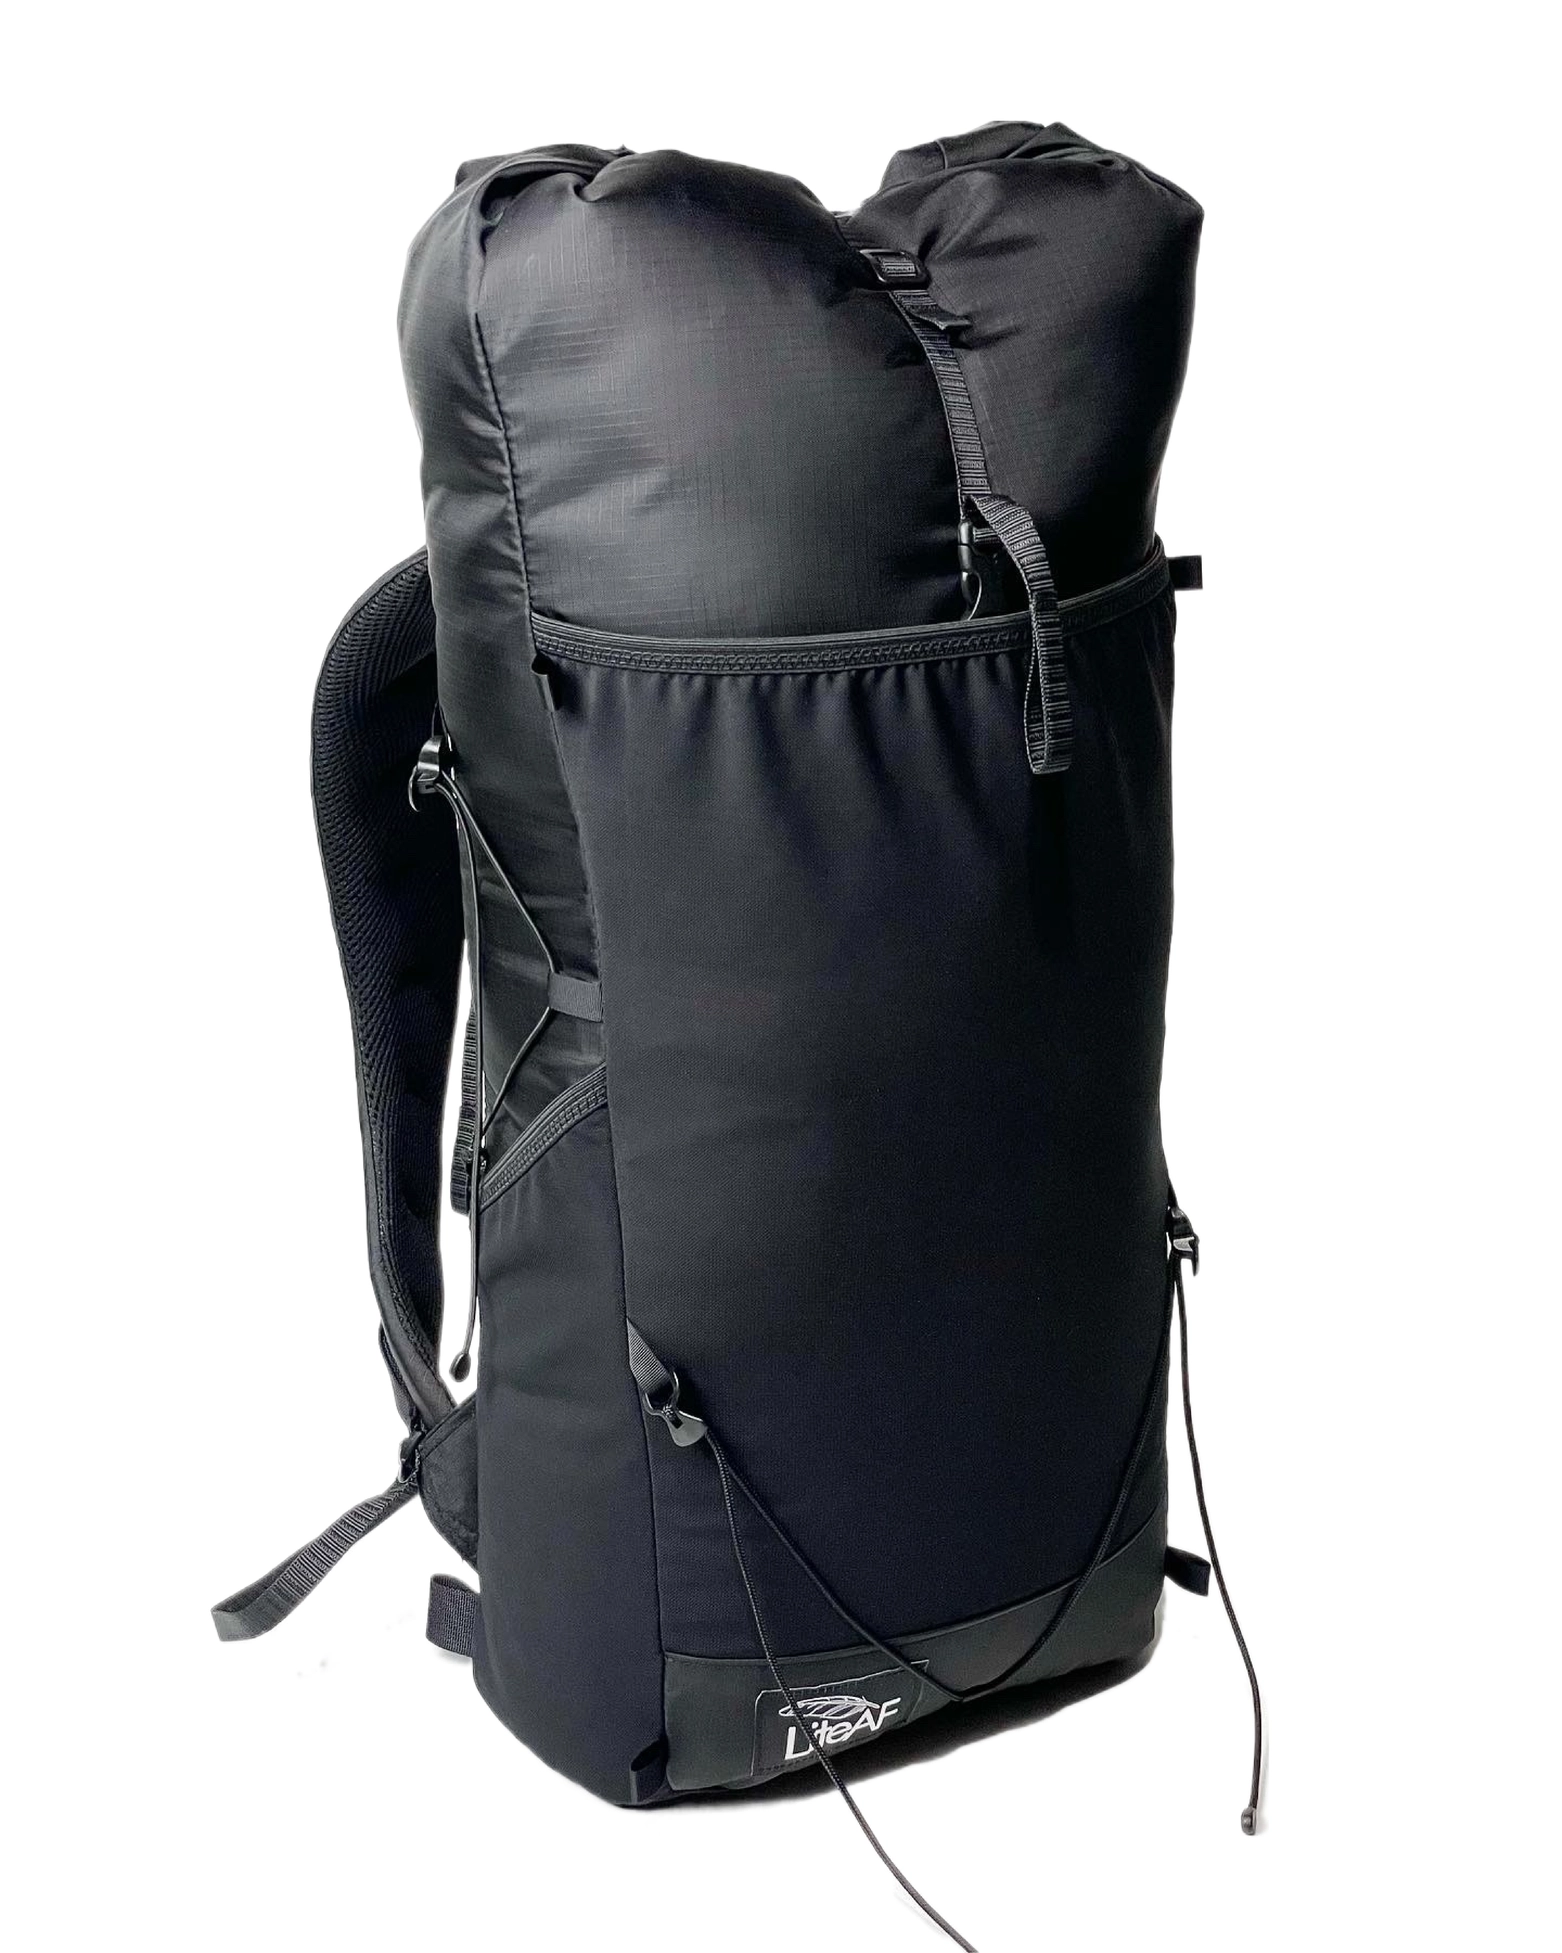 Multi-Day Frameless » 20L Ultralight – Daypack Backpack